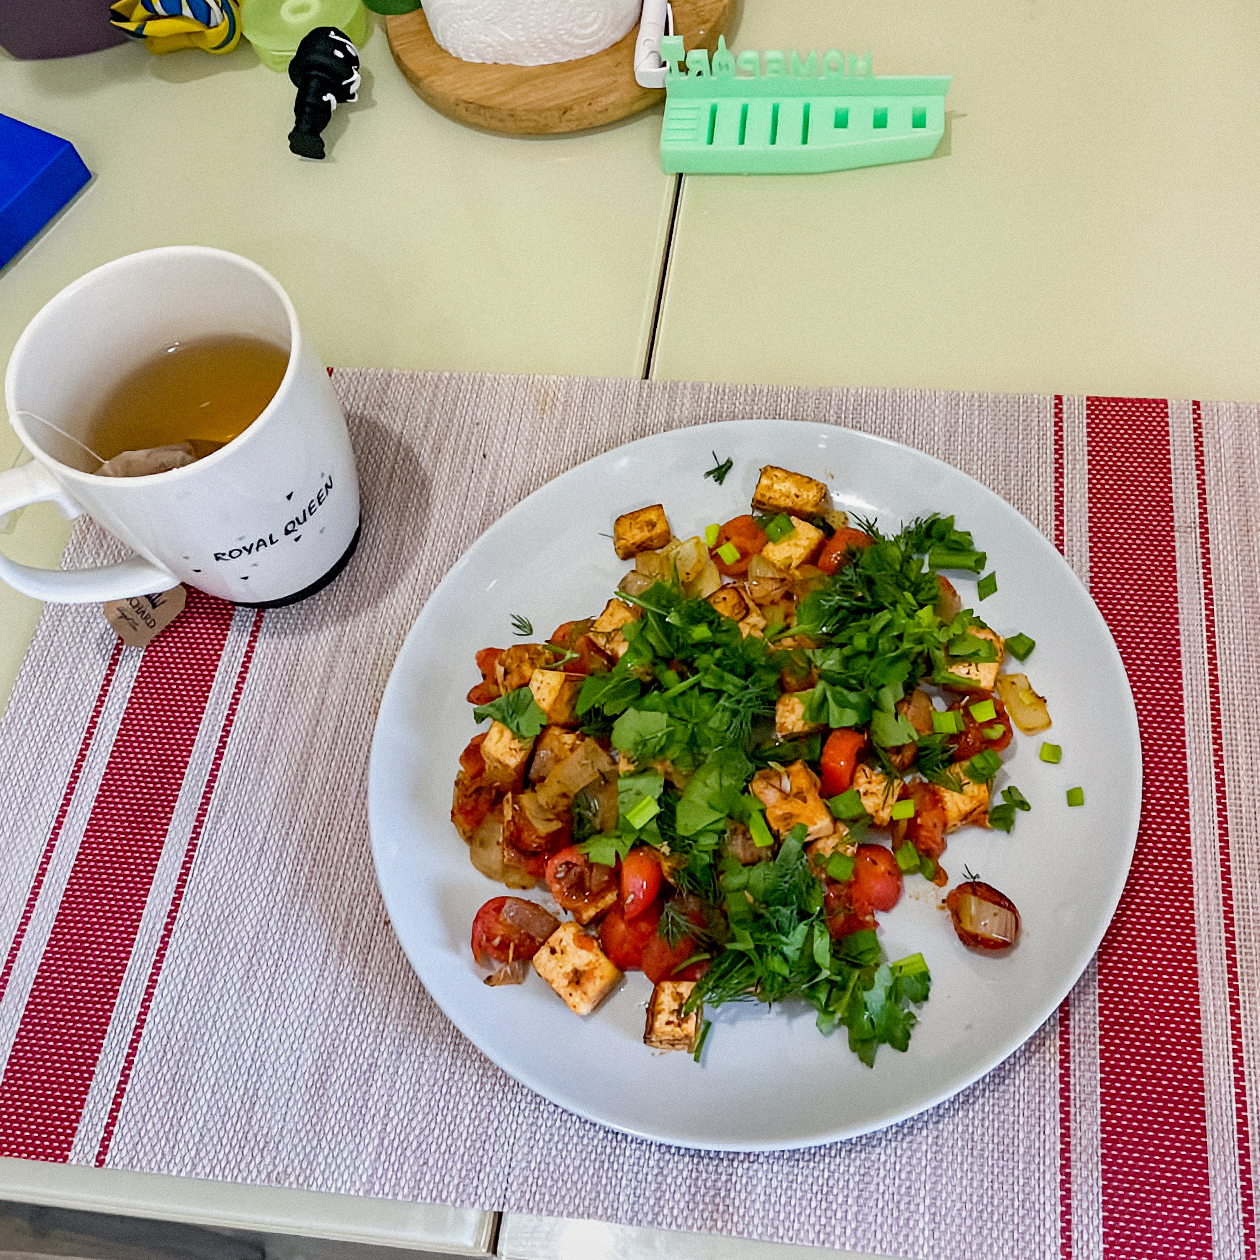 Еще один мой обед — тофу с тыквой, помидорами черри и зеленью